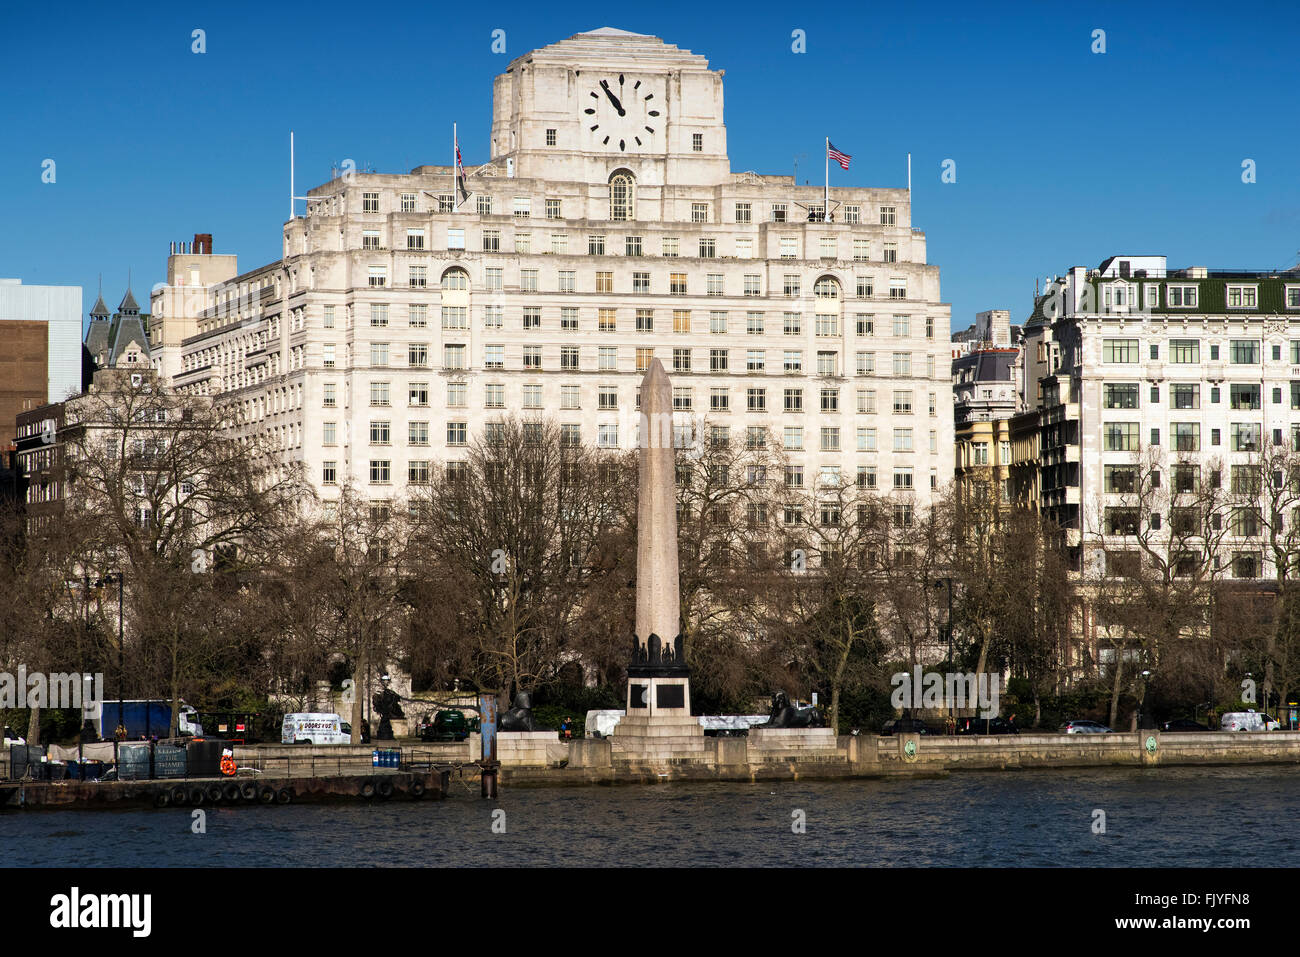 Cleopatra's Needle & Shell Mex House the Embankment London Stock Photo